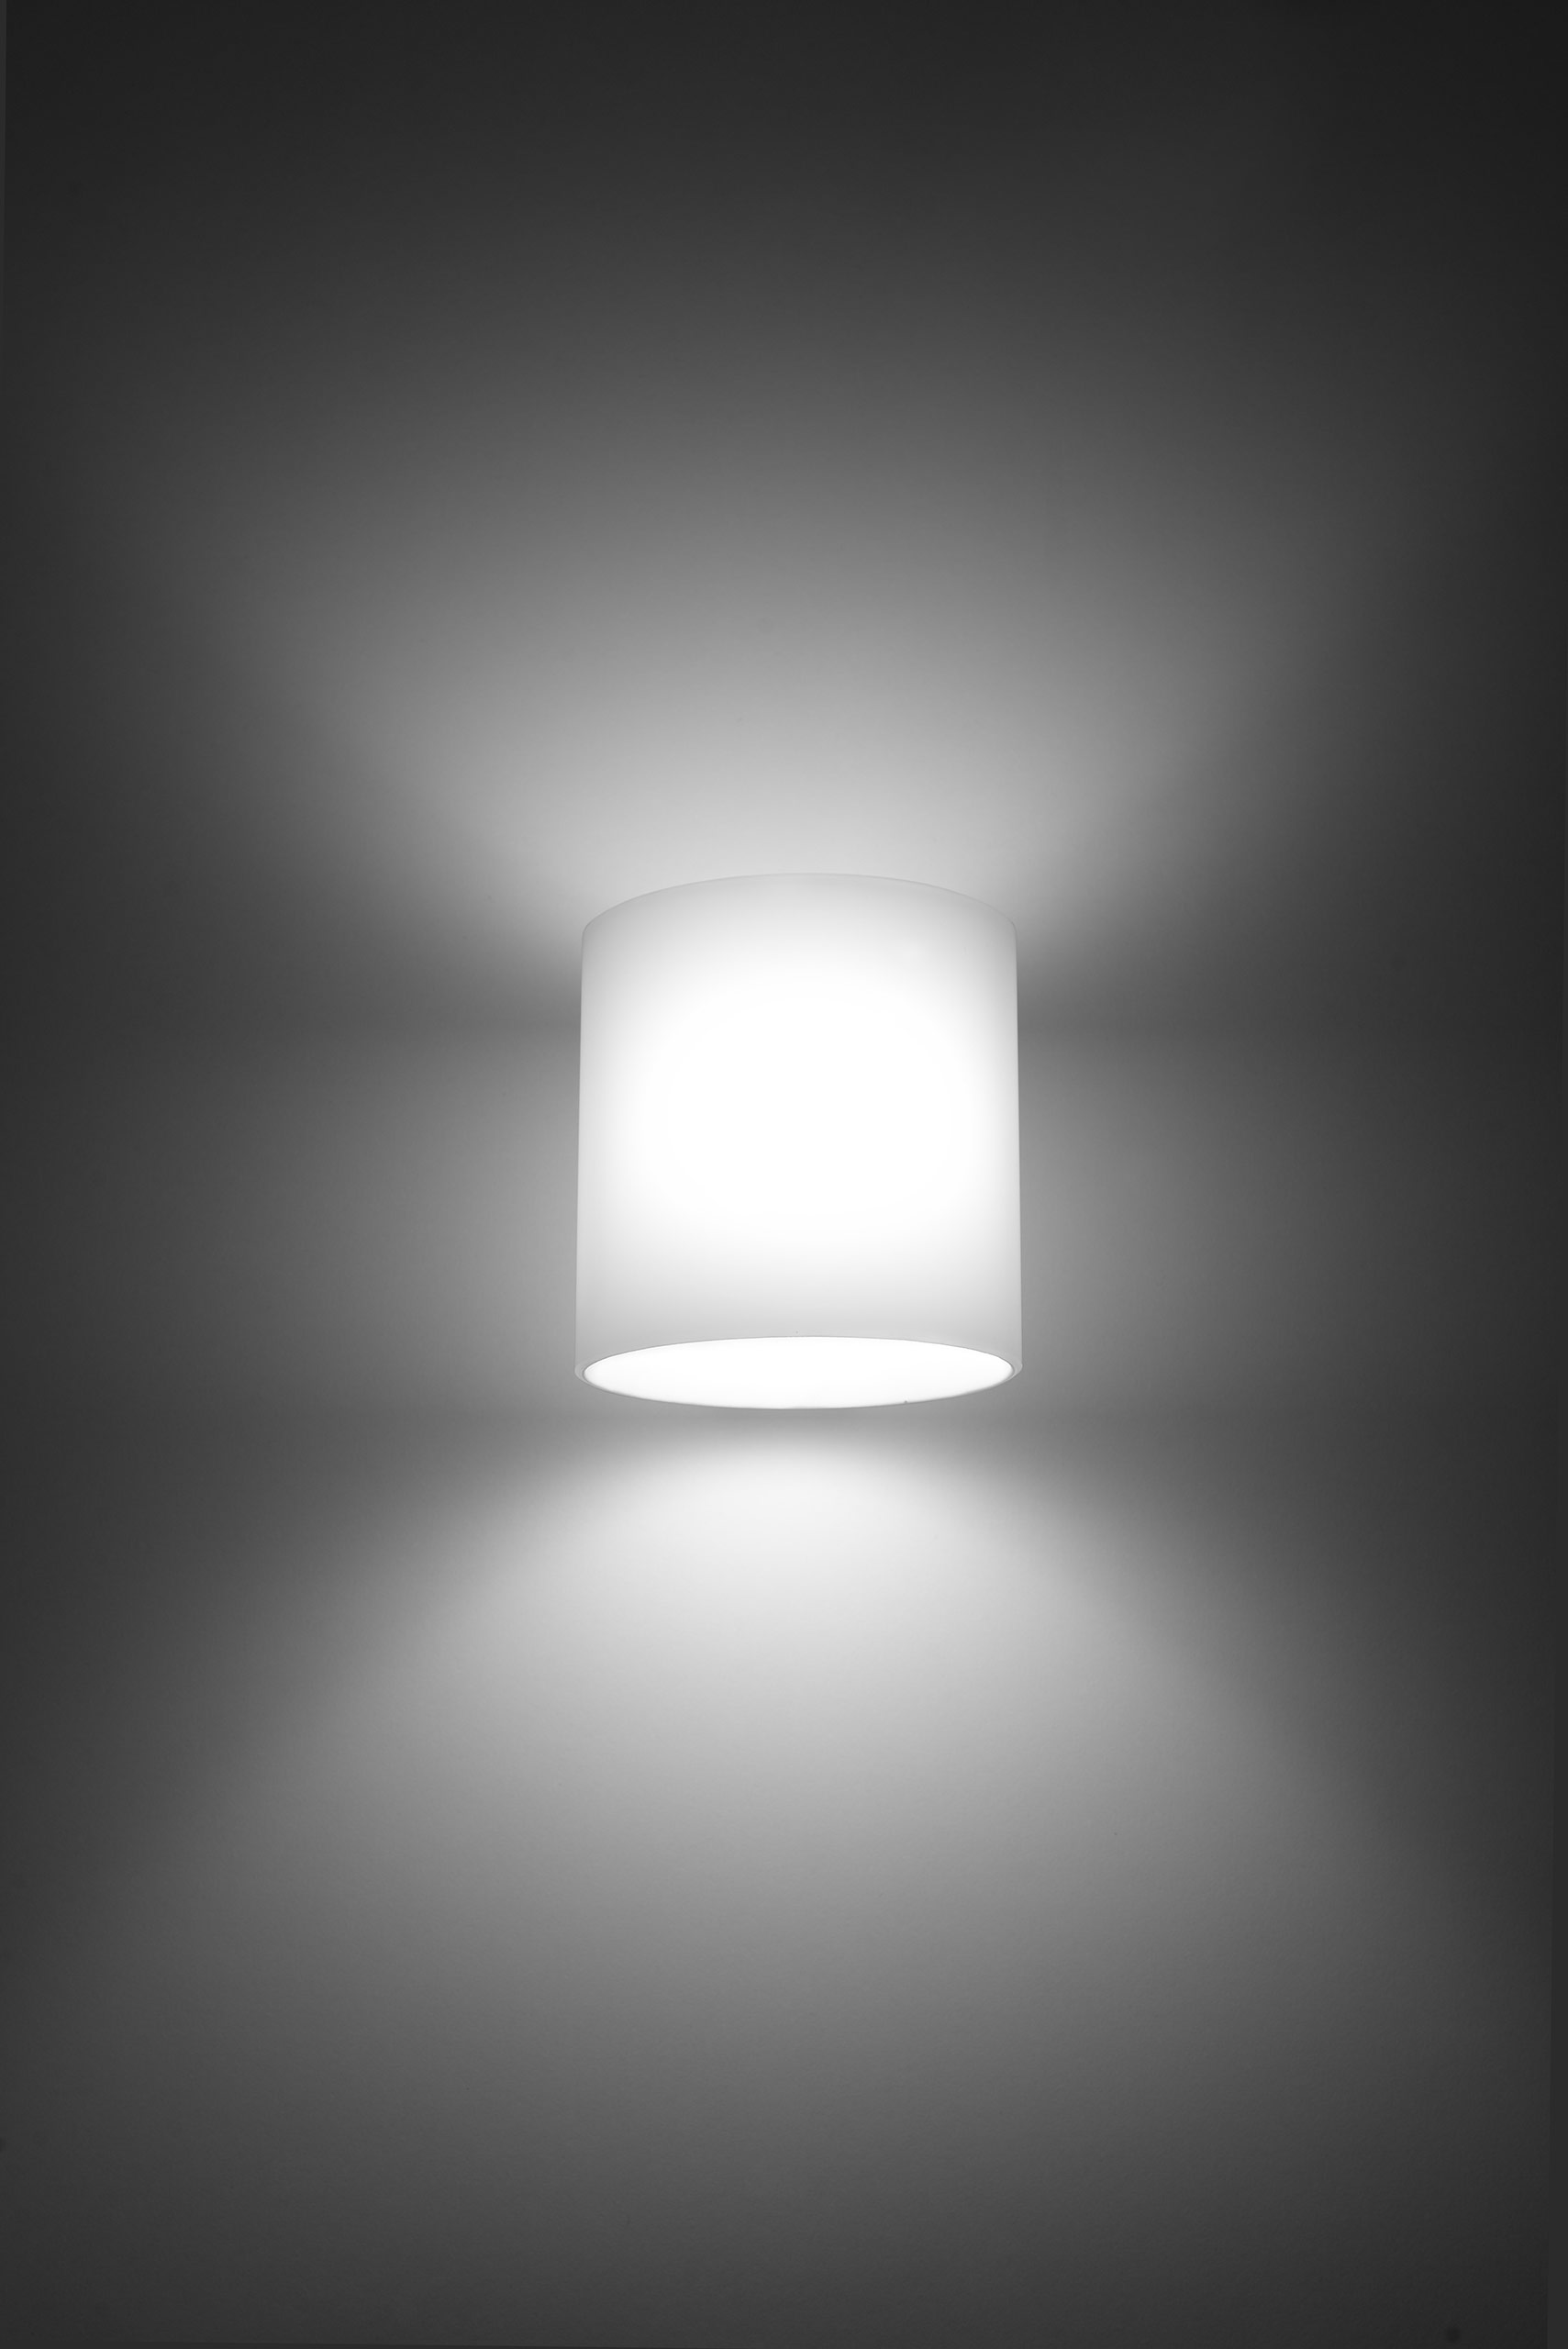 Wandlampe mit Glas-Schirm rund inkl. LED warmweiß 4,5W | LichtED.de - LED  Lampen und Beleuchtung